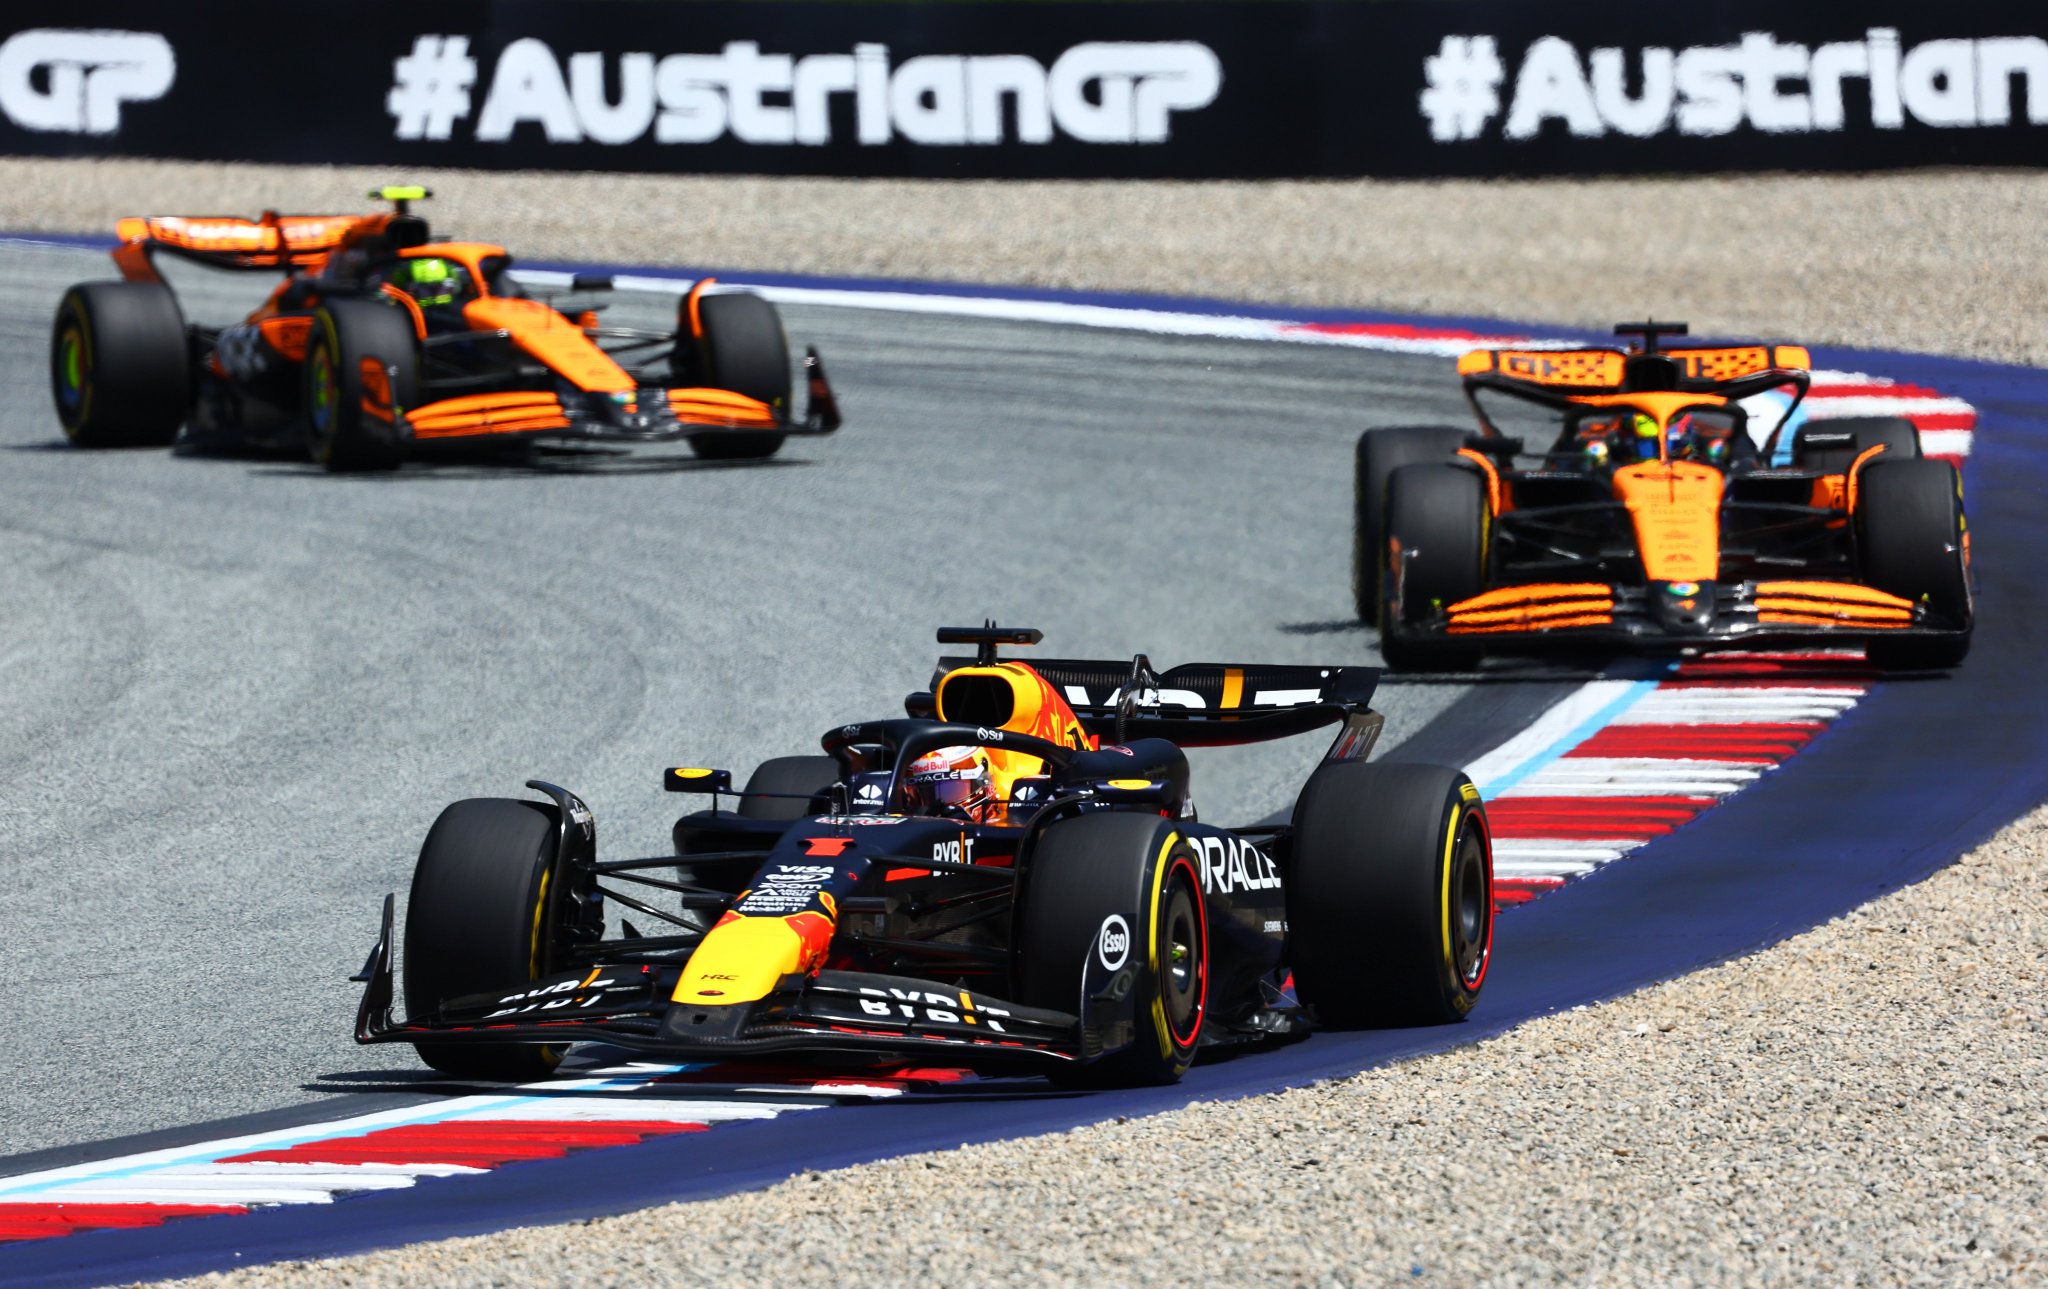 Max Verstappen triunfa en el sprint austriaco frente a unos McLaren cercanos y peleones